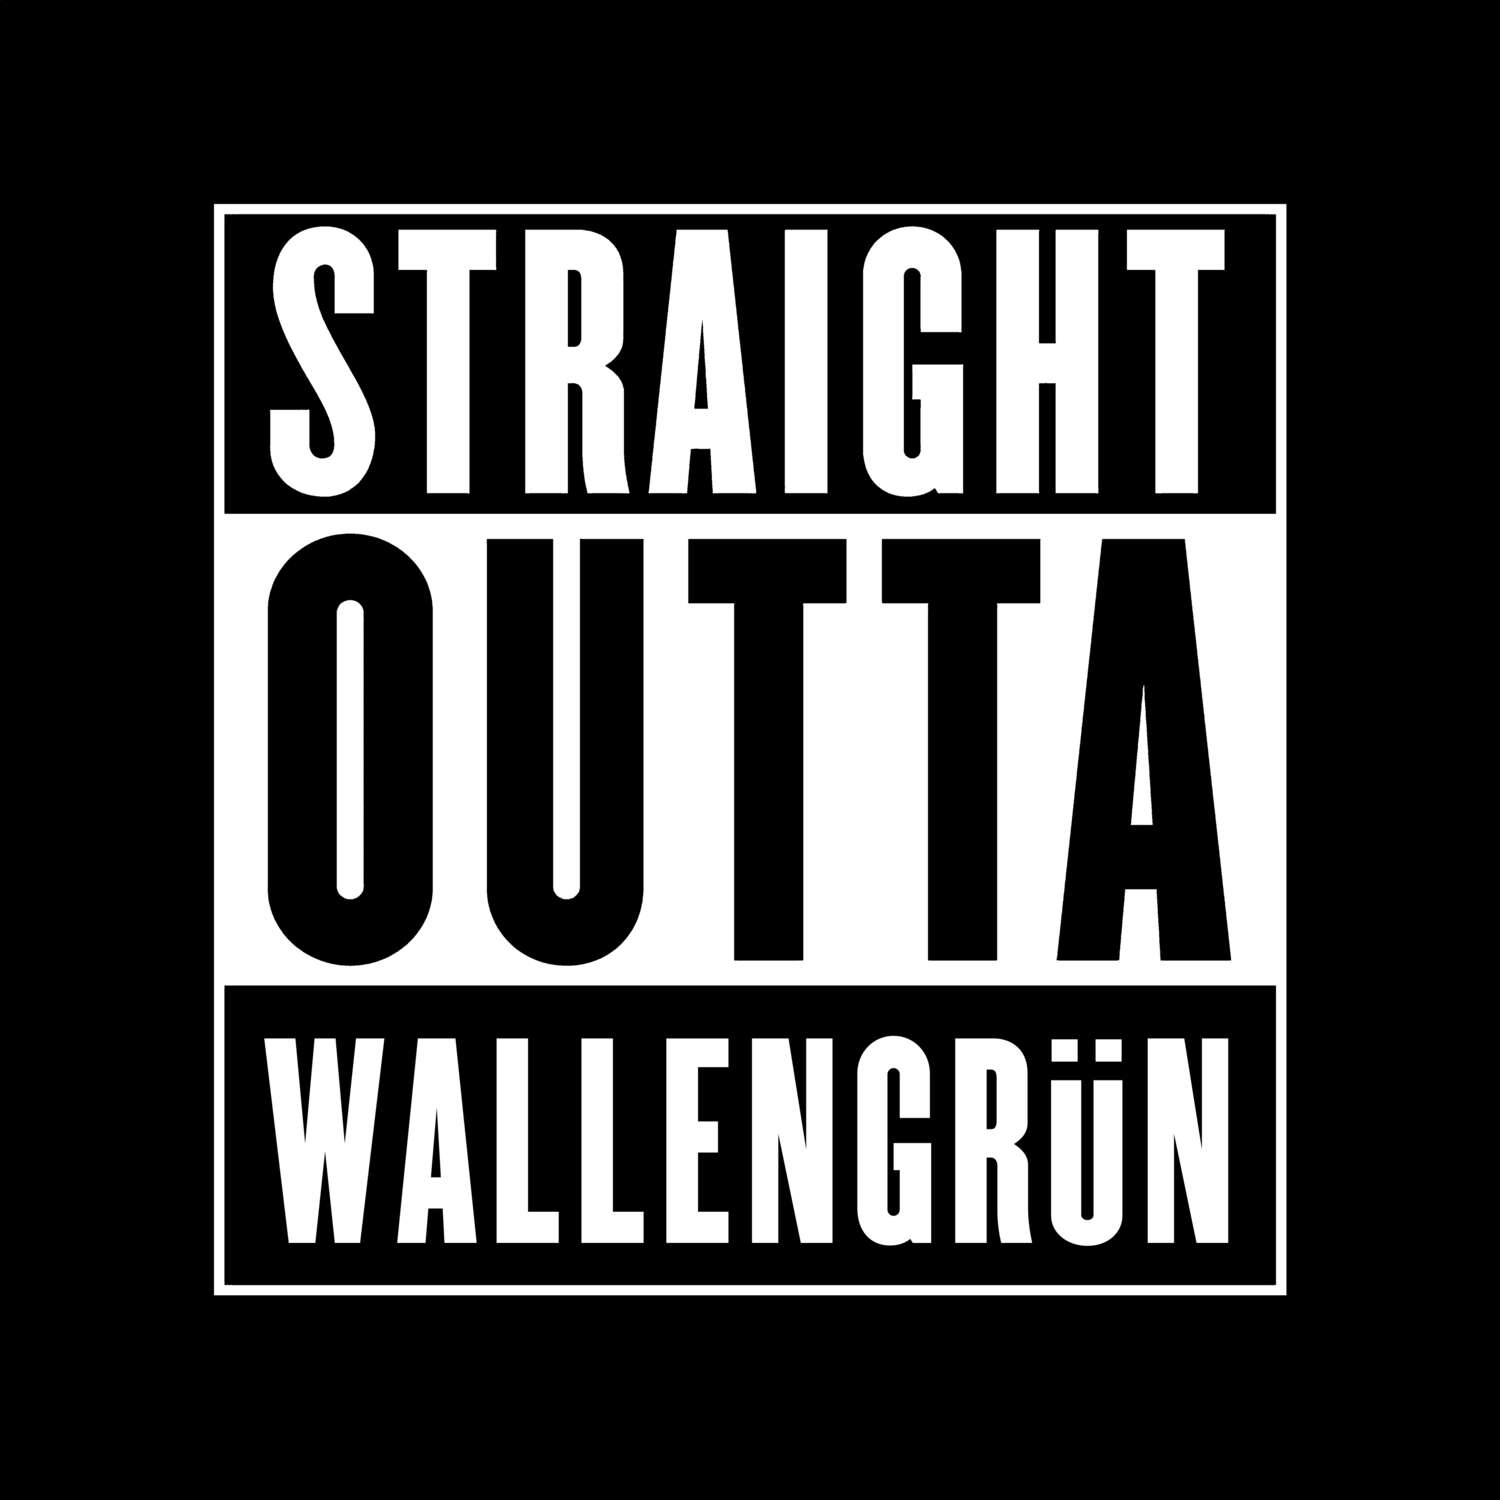 Wallengrün T-Shirt »Straight Outta«